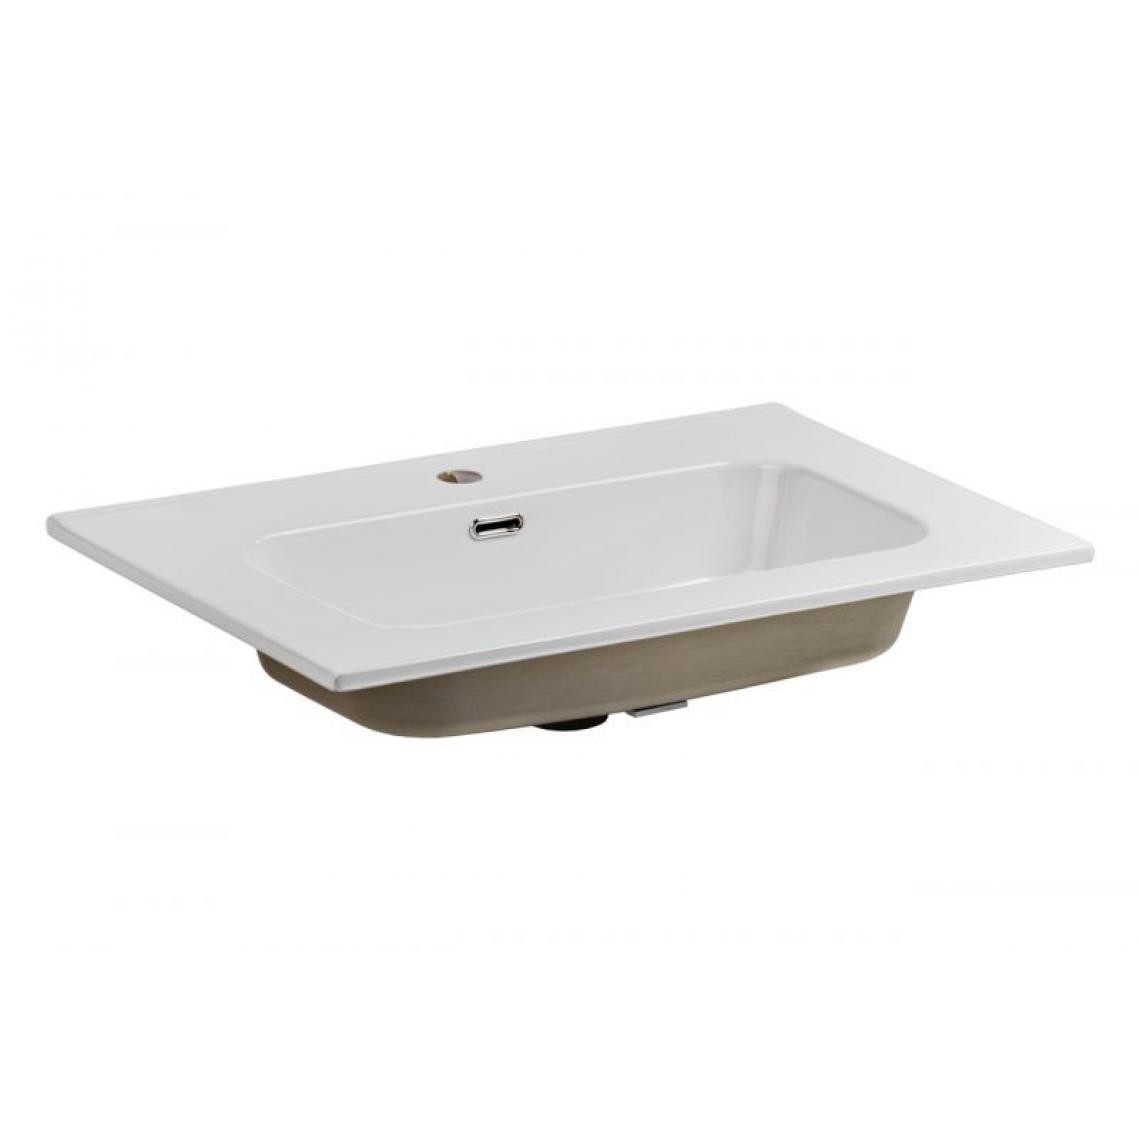 Inconnu - GO 60-8095 meuble vasque - meuble vasque 61 x 46cm - Vasque